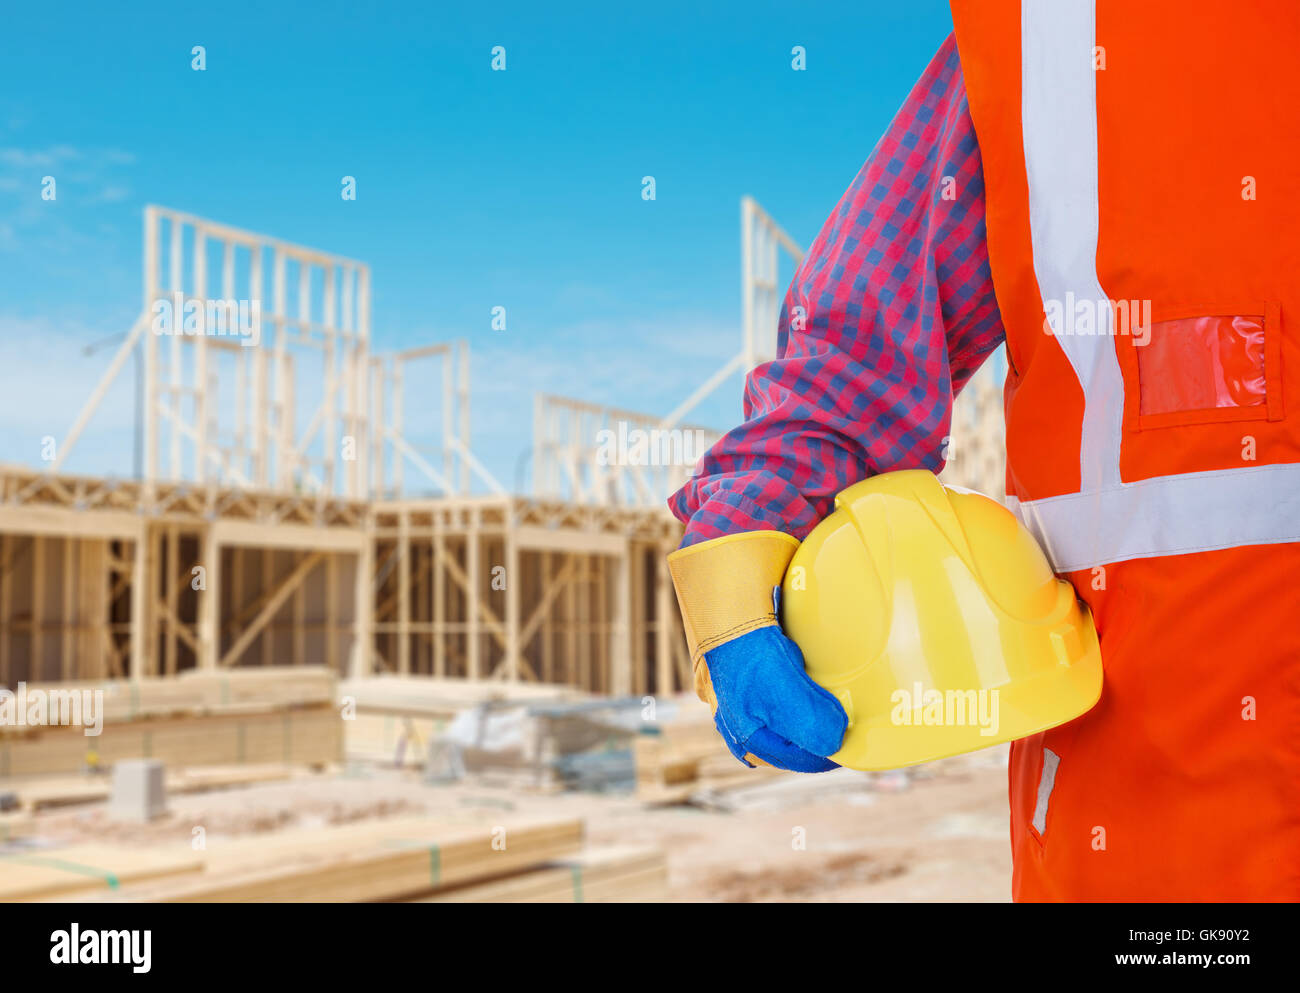 Sicherheit Schutz Arbeitsmittel. Arbeiter in orange Weste mit gelben Helm gegen Baustelle als Hintergrund Stockfoto